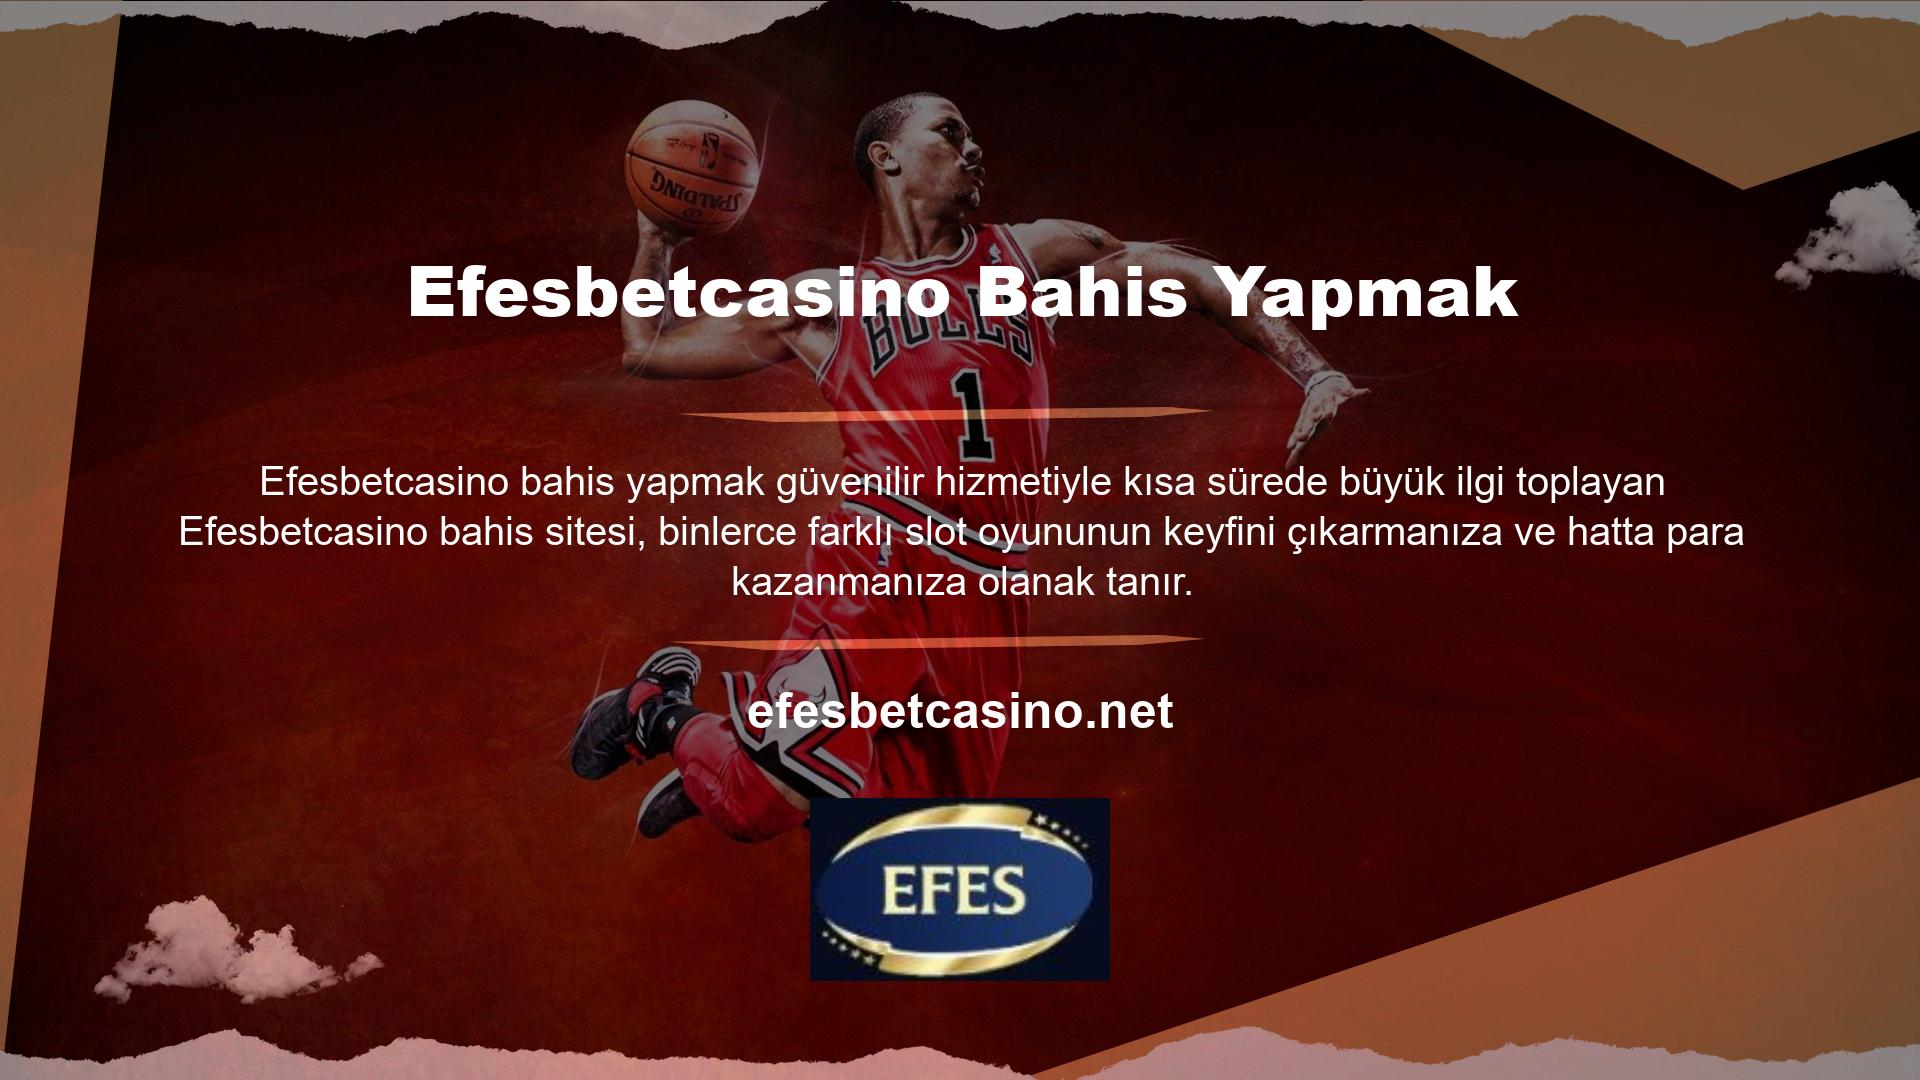 Profesyonel bahis altyapısı ve kesintisiz bahis ile donatılmış Efesbetcasino, Türkiye'de casinoların kapanmasının ardından binlerce oyunu internet üzerinden oynamayı kolay ve basit hale getiriyor